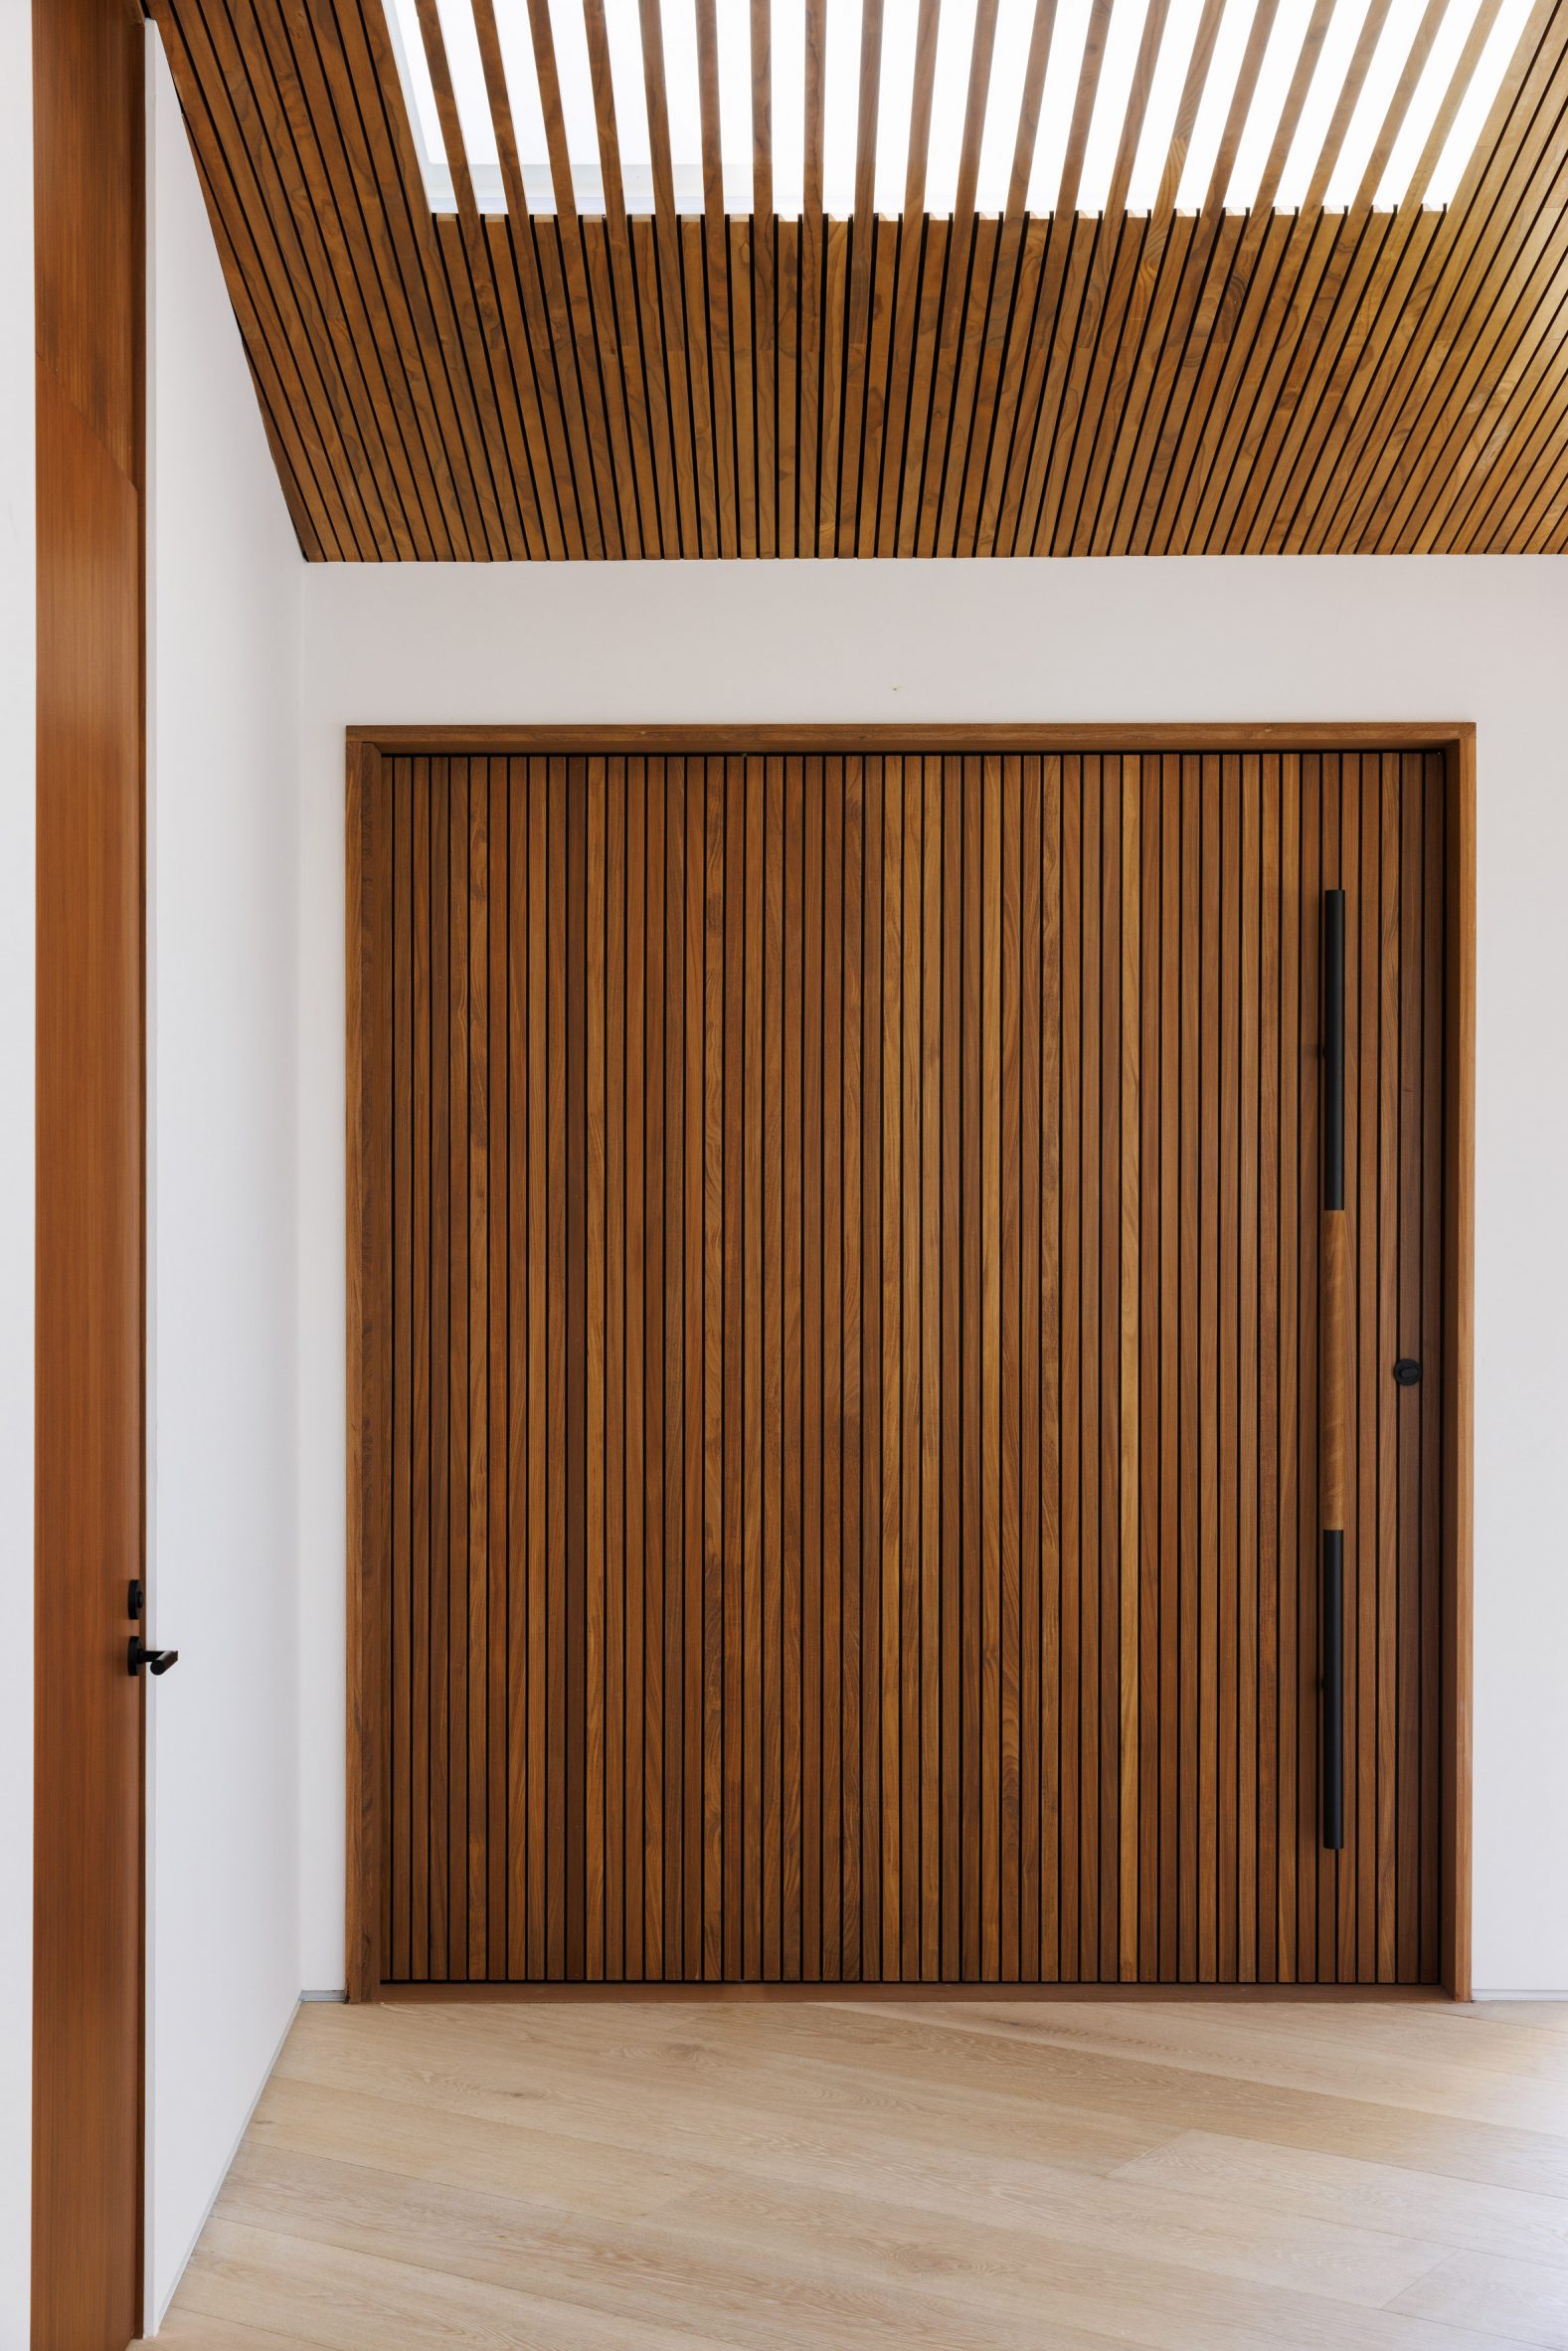 A large, teak front door